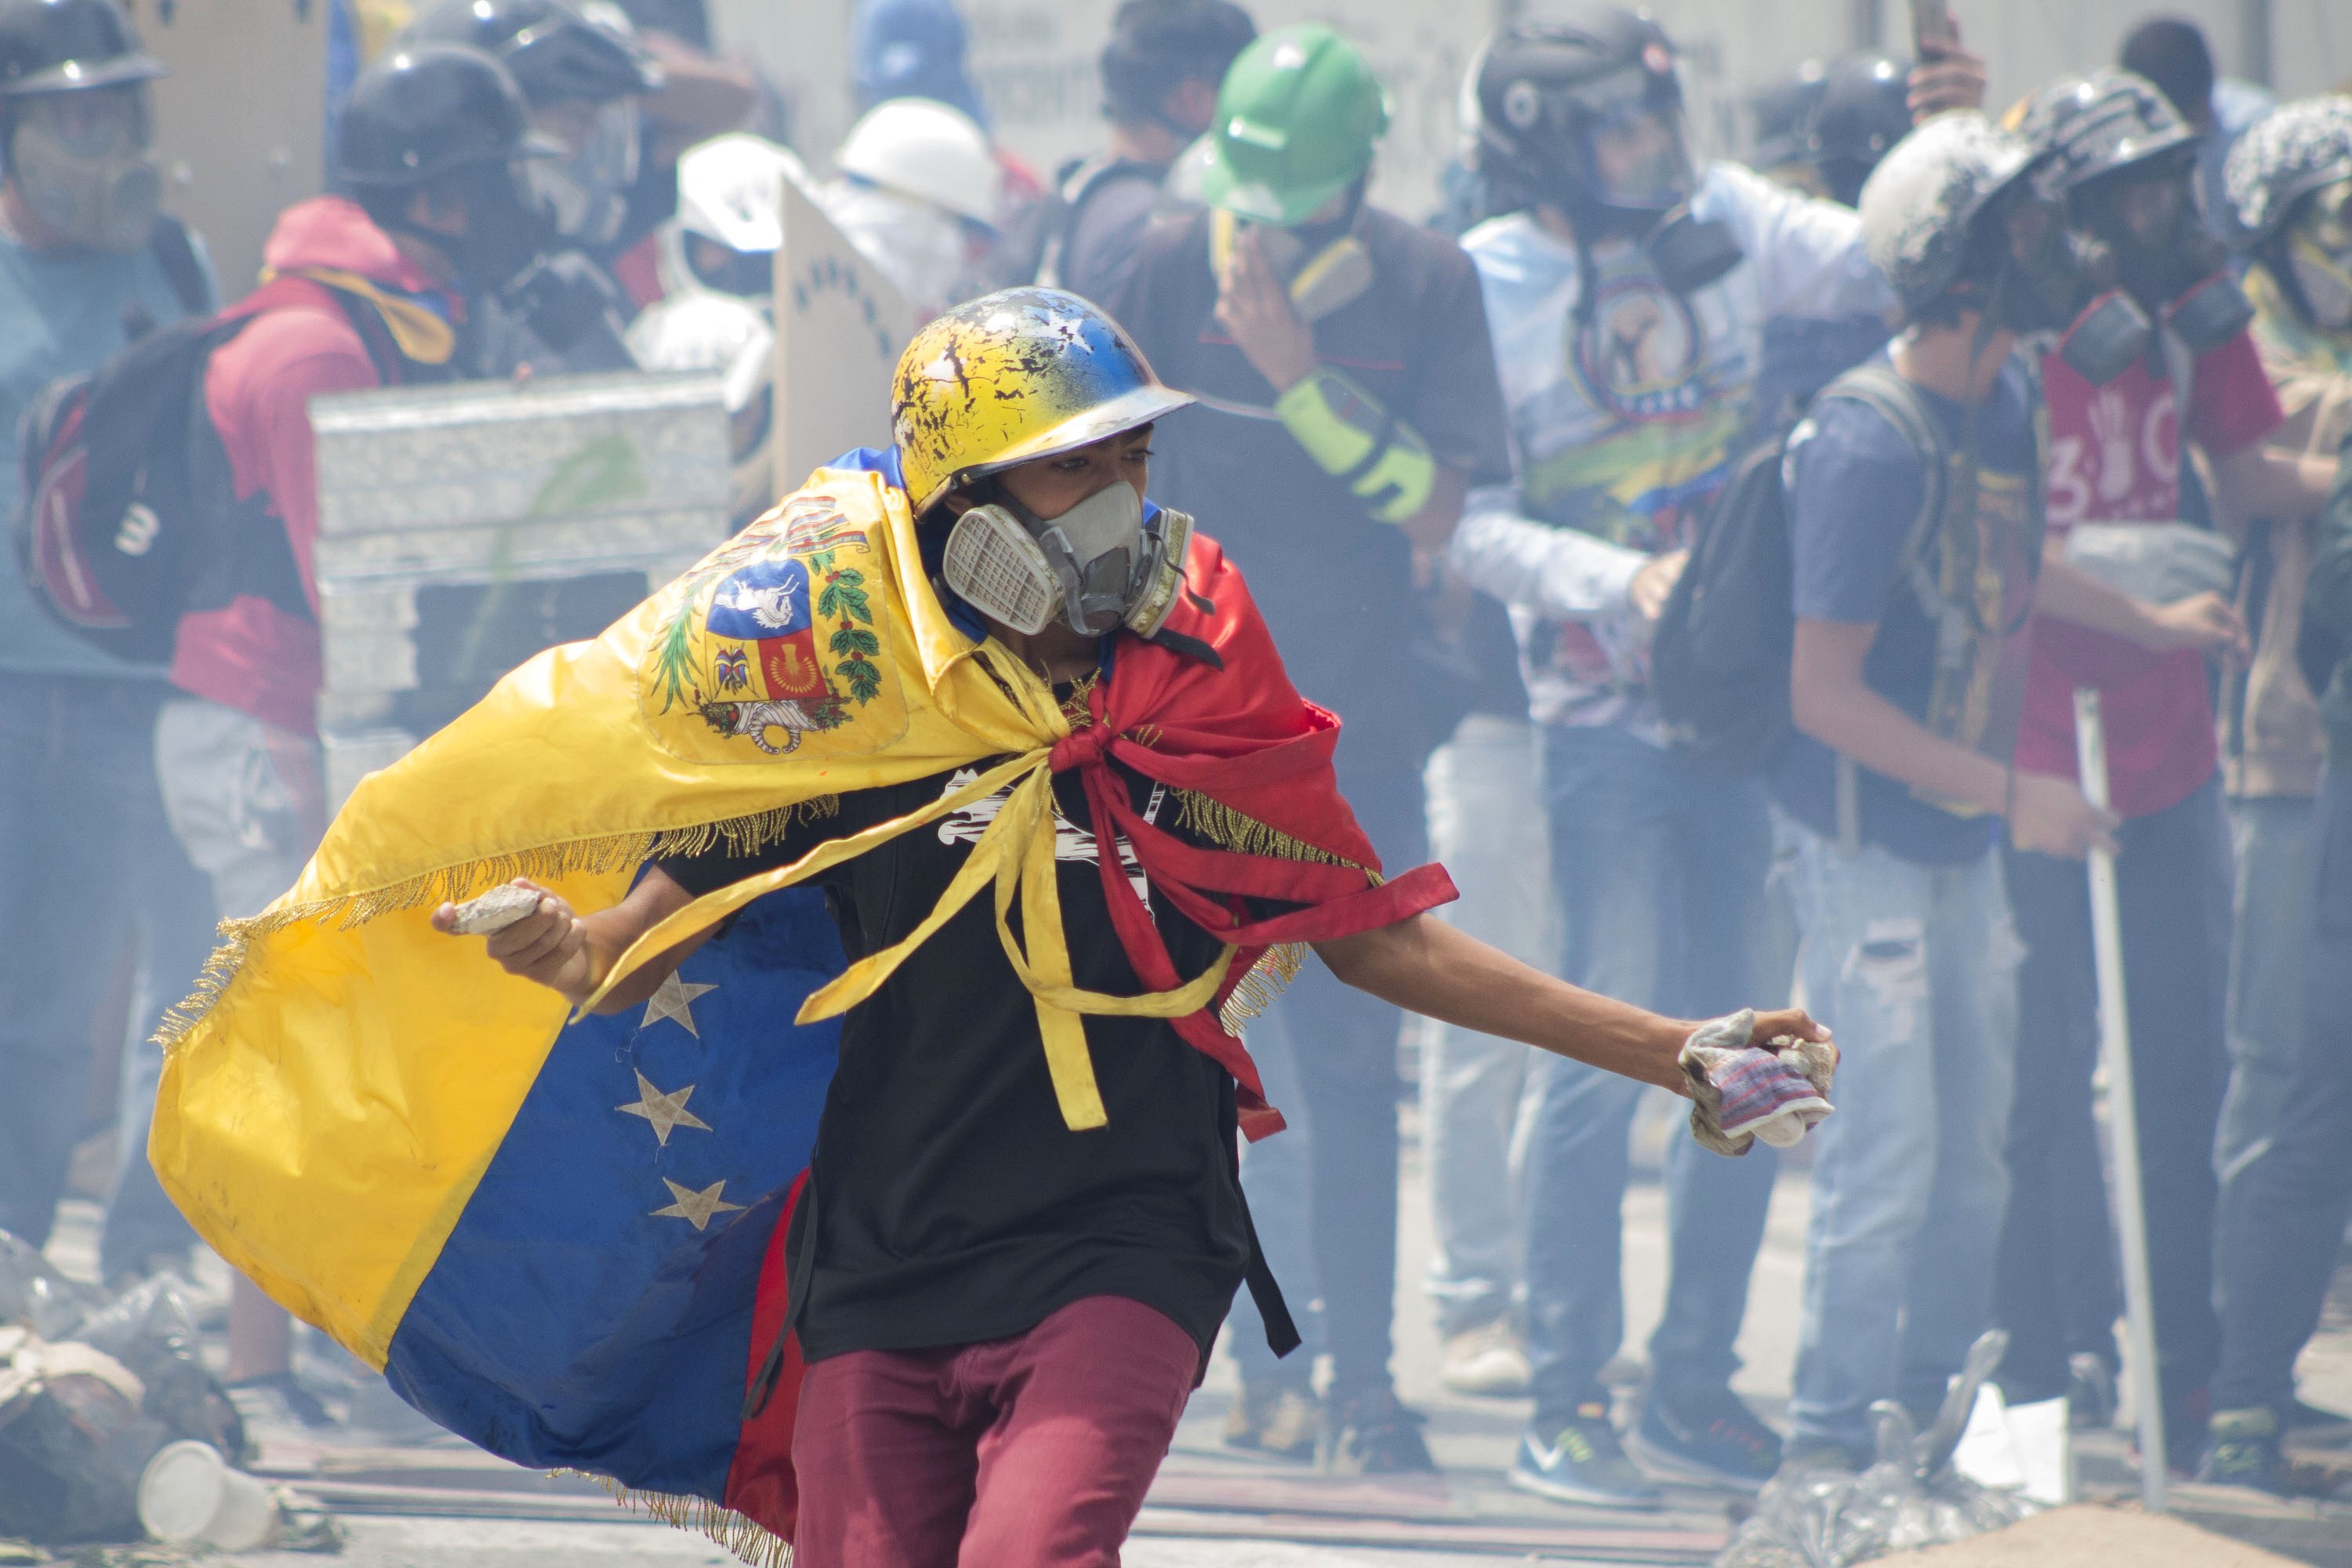 (3)VENEZUELA-CARACAS-SOCIEDAD-PROTESTA